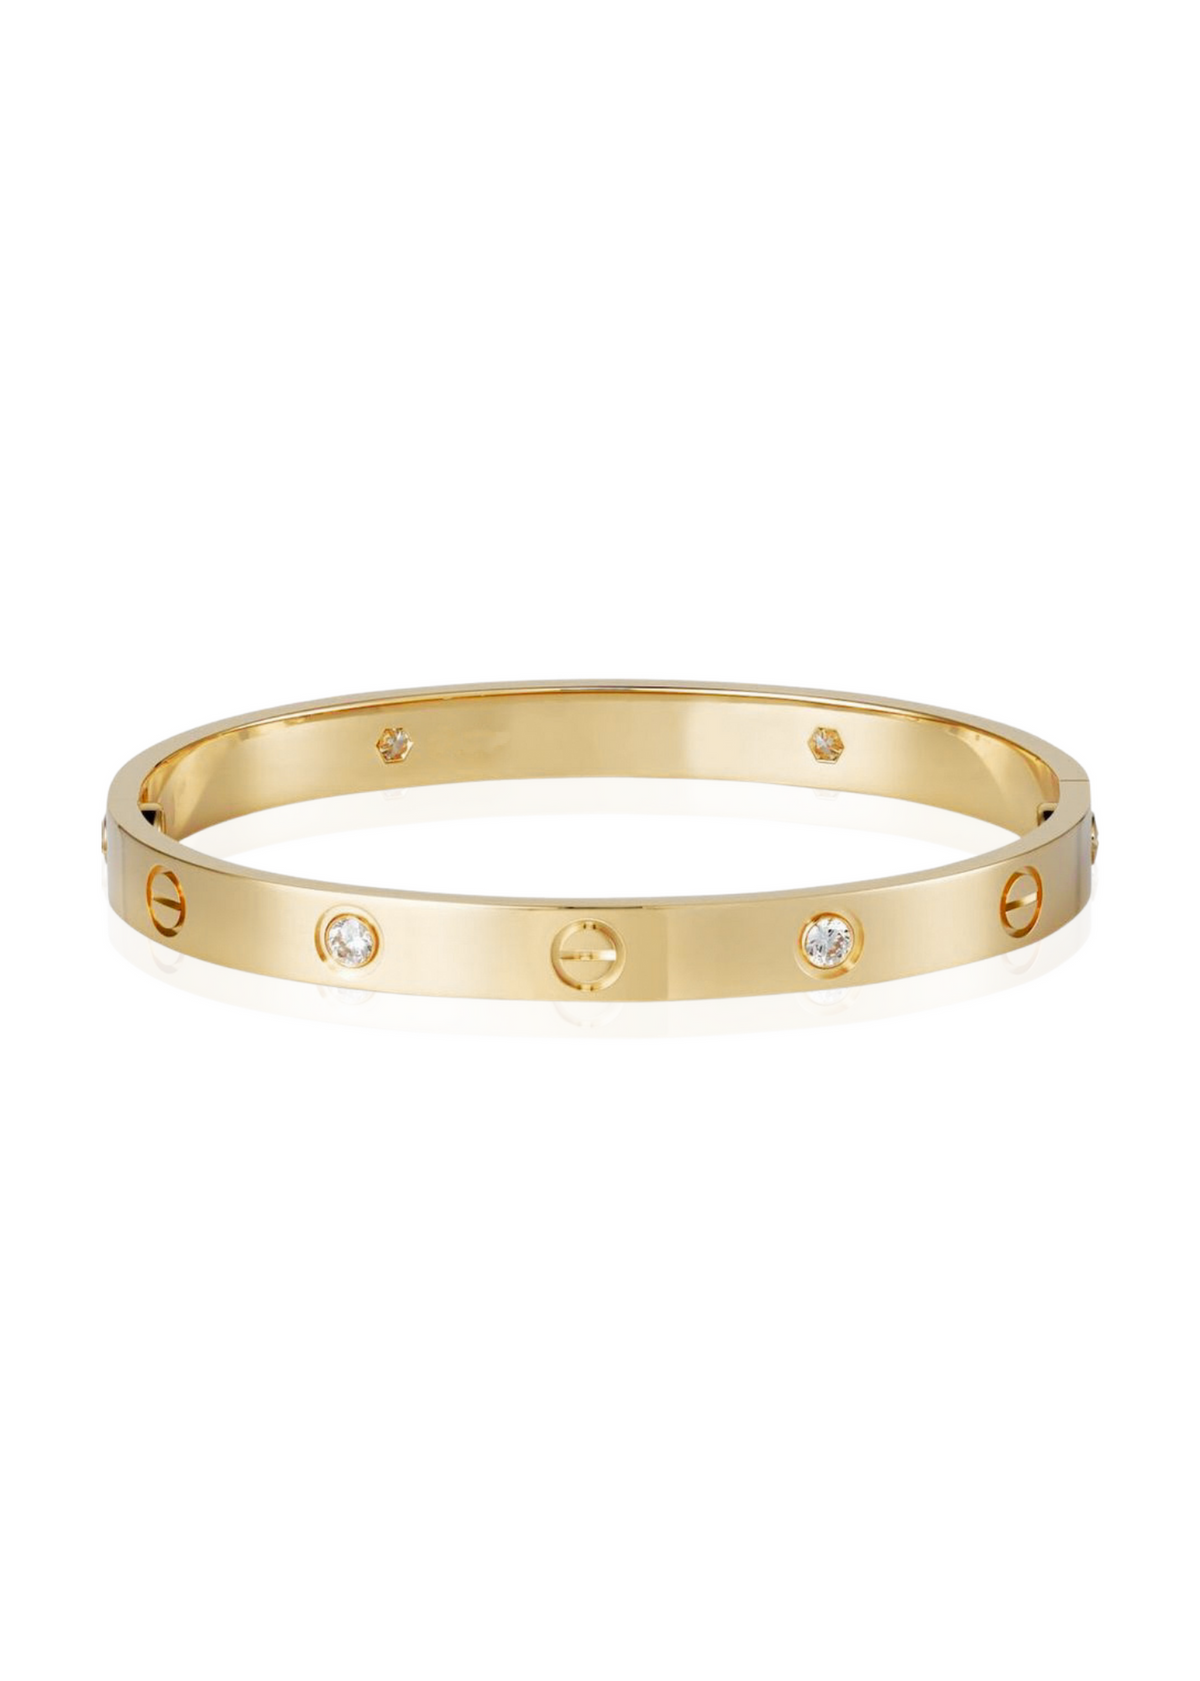 Lovely bracelet gold zirconia